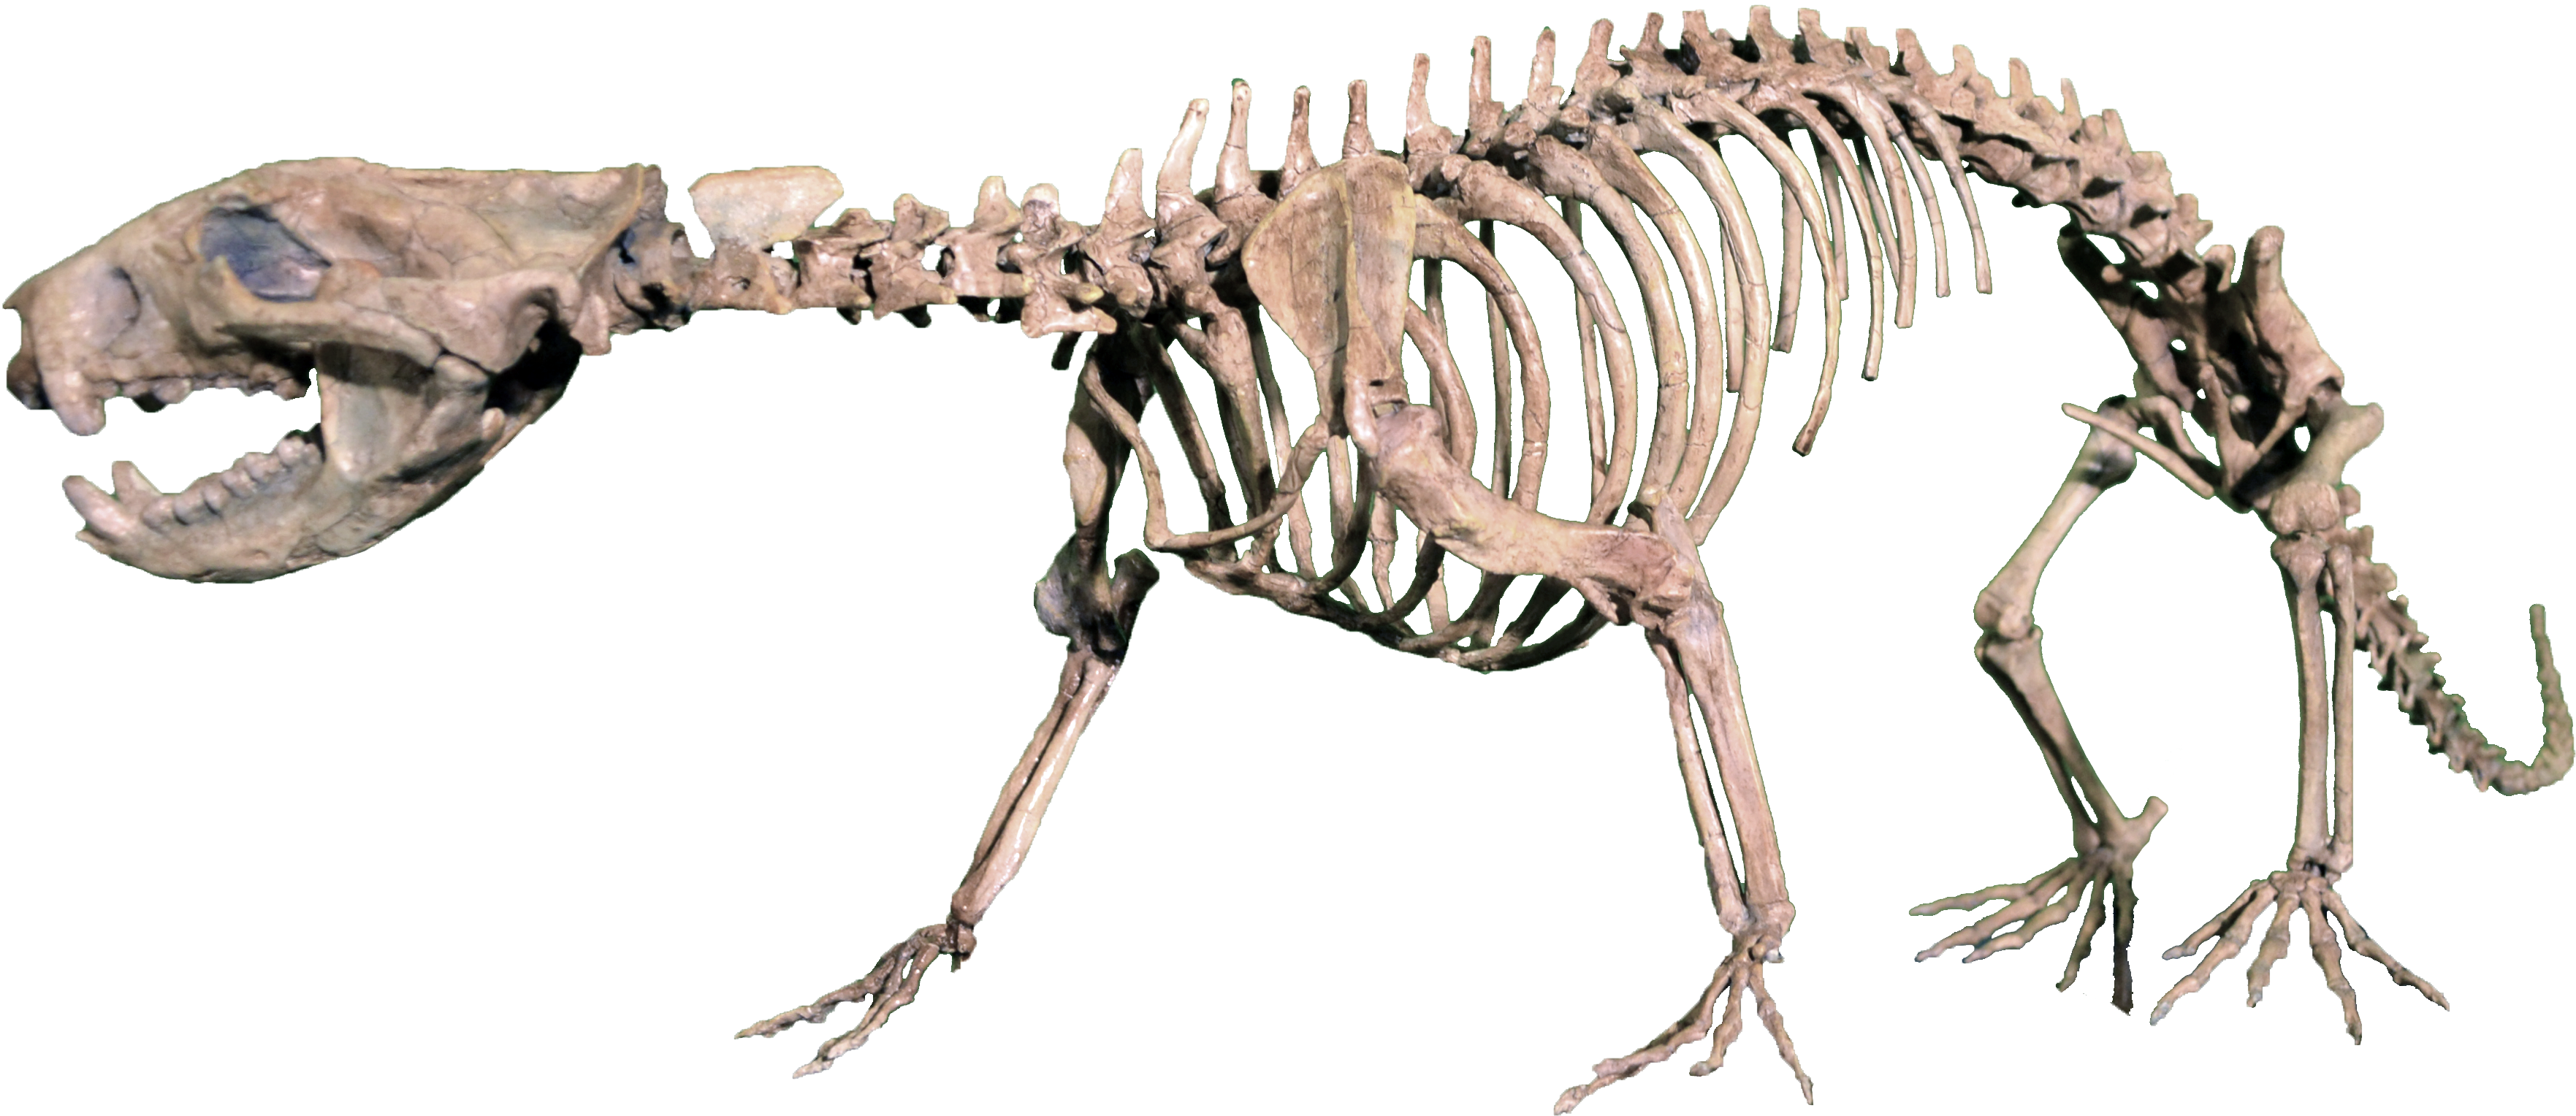 Rekonstruovaná kostra didelfodona, jednoho z největších savců úplného konce druhohorní éry. Při délce 1 metru a hmotnosti kolem 5 kilogramů byl mezi pozdně křídovými savci učiněným gigantem. Kredit: MCDinosaurhunter, Wikipedie (CC BY-SA 3.0)